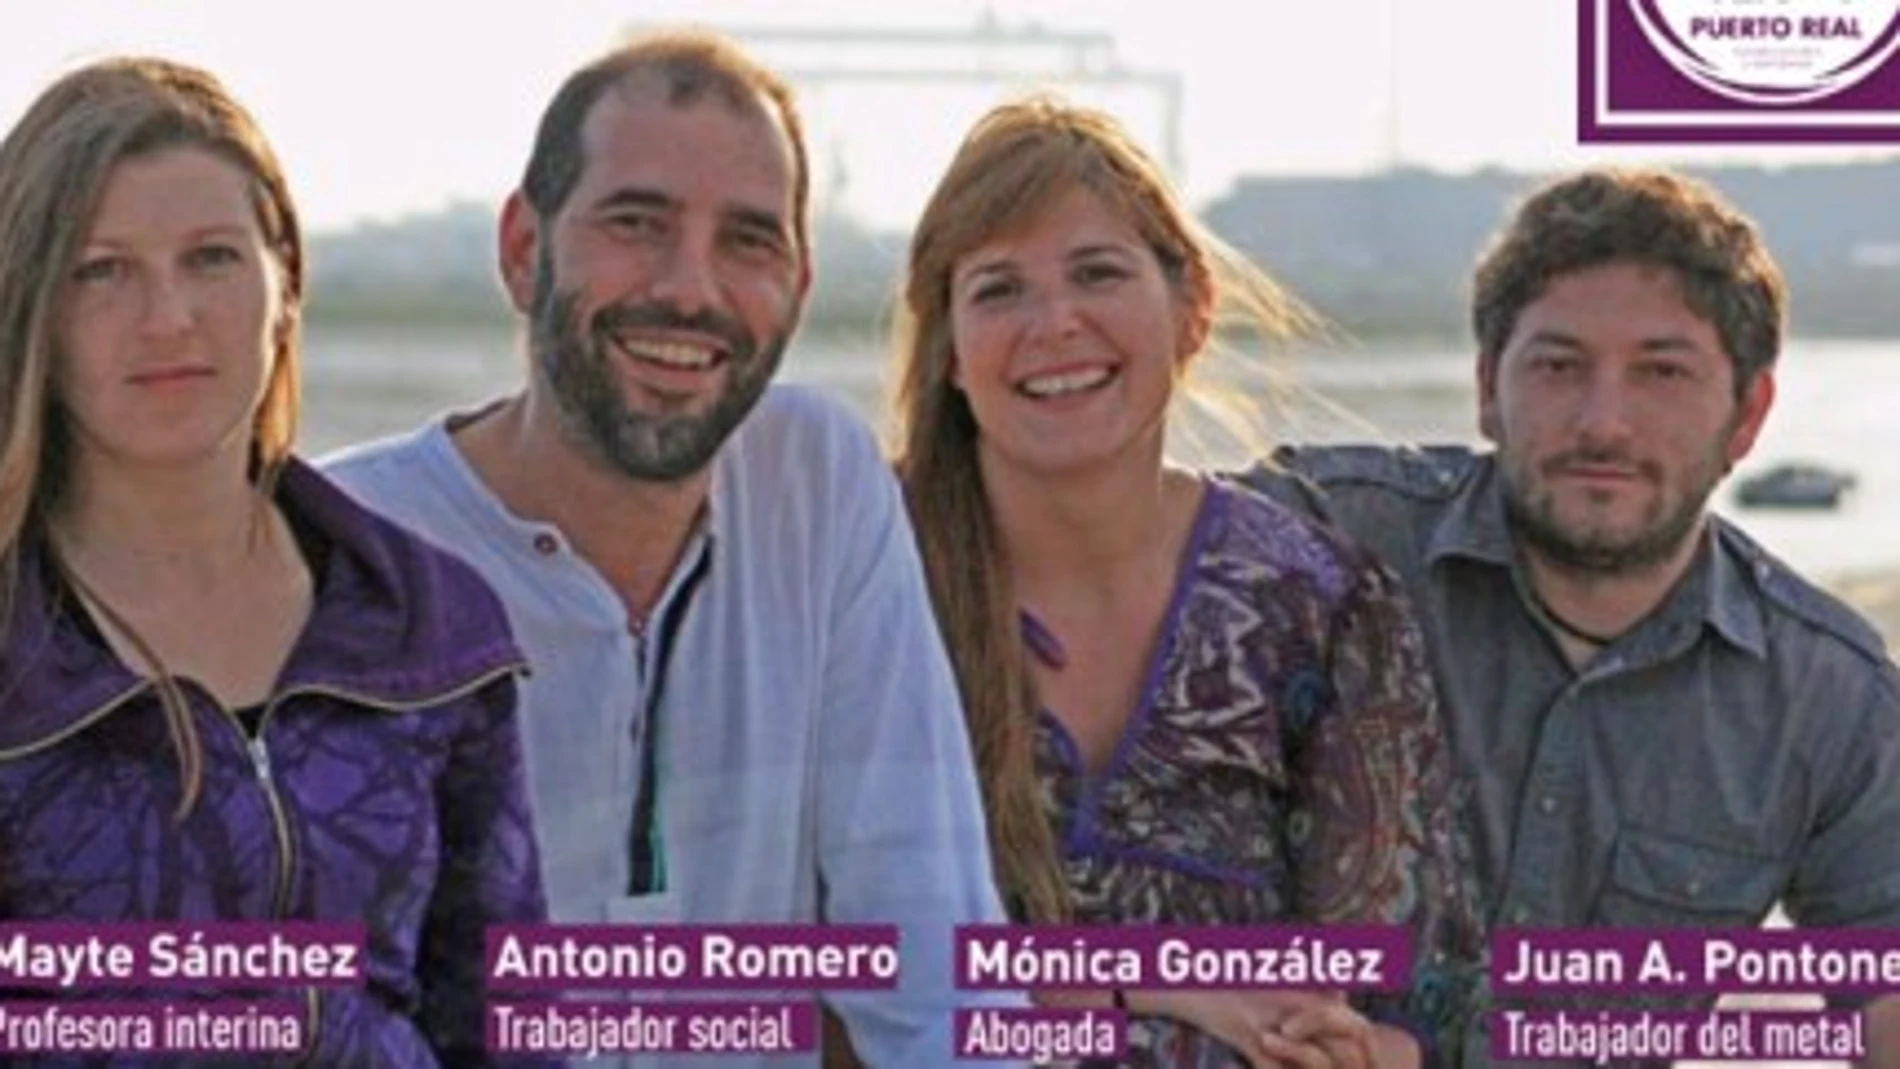 Mónica González, en el centro, con otros miembros de Podemos en Puerto Real. A su izquierda, Antonio Romero, alcalde del municipio.